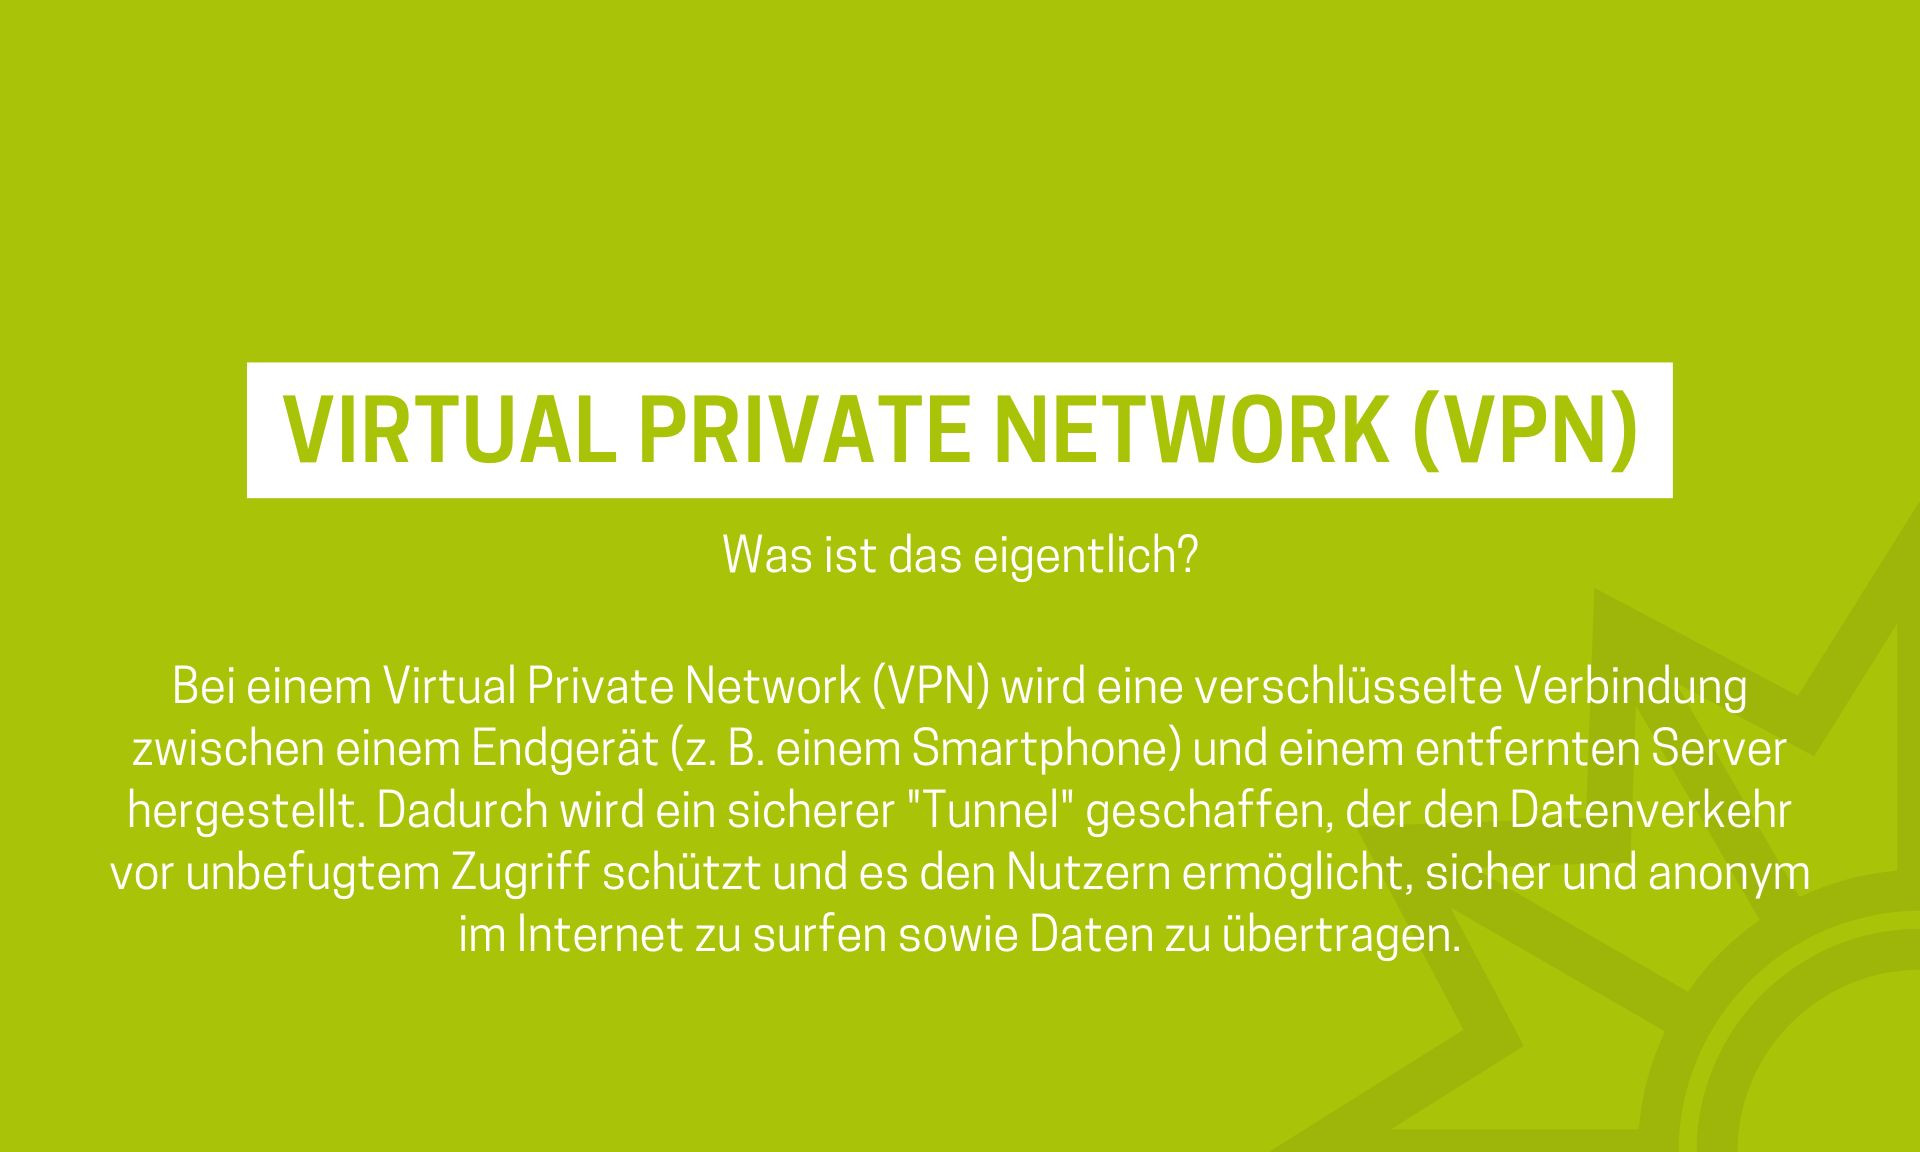 Was ist eigentlich ein VPN?